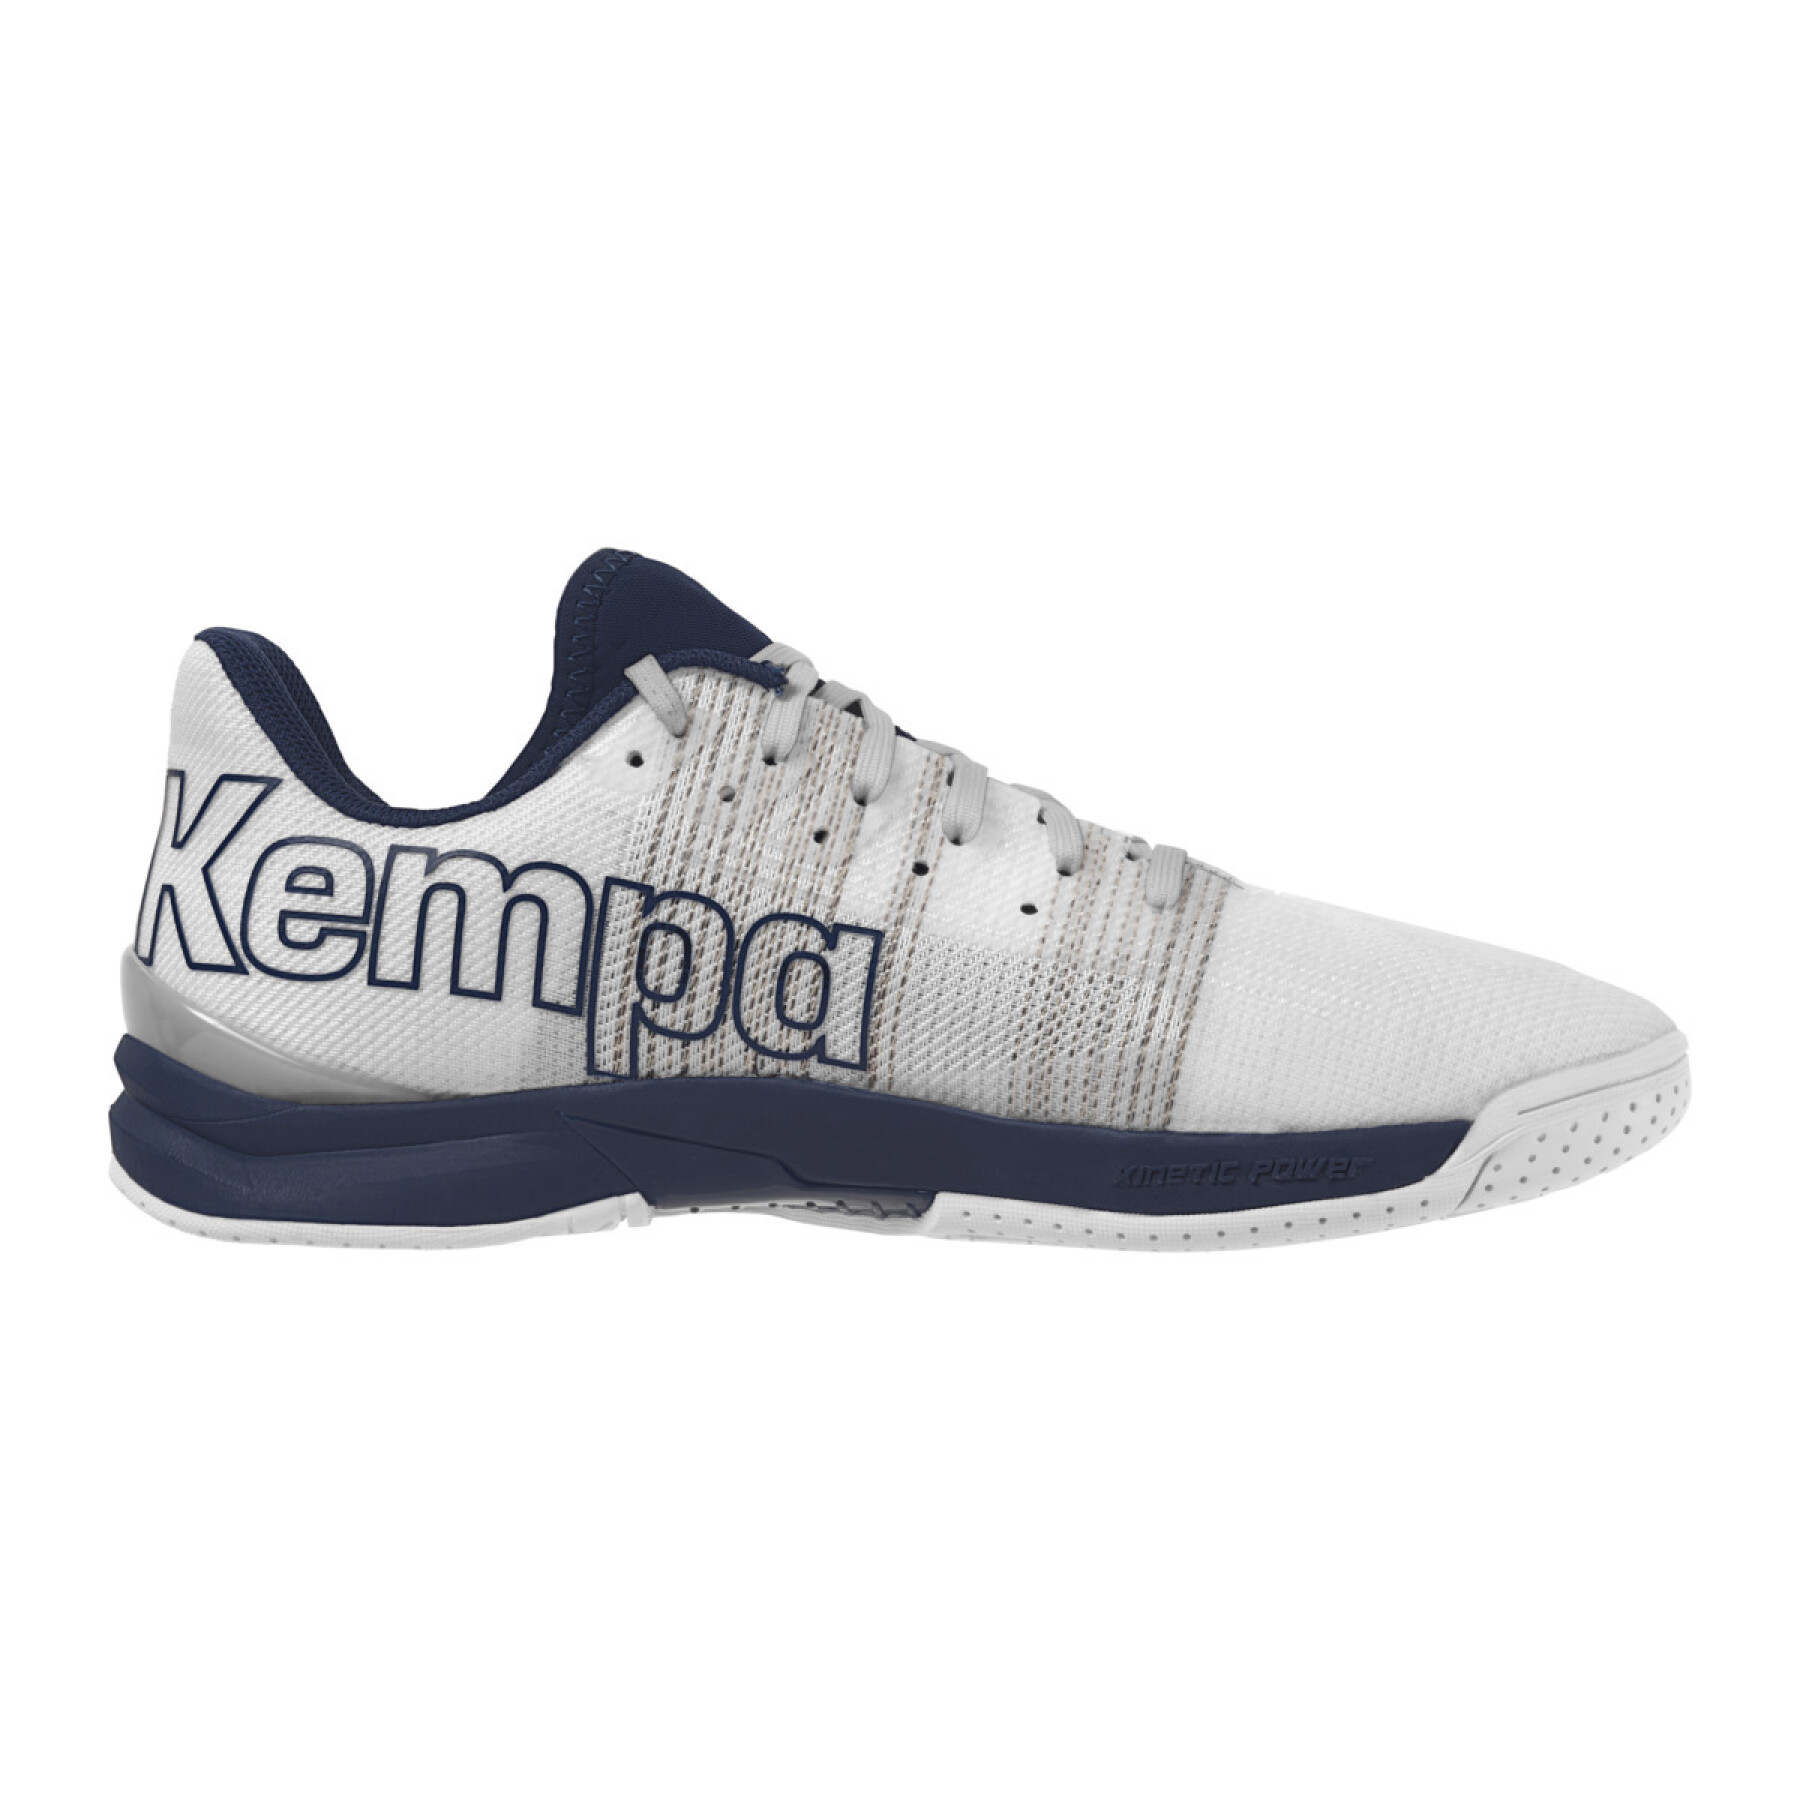 Sapatos de interior Kempa Attack One 2.0 Game Changer